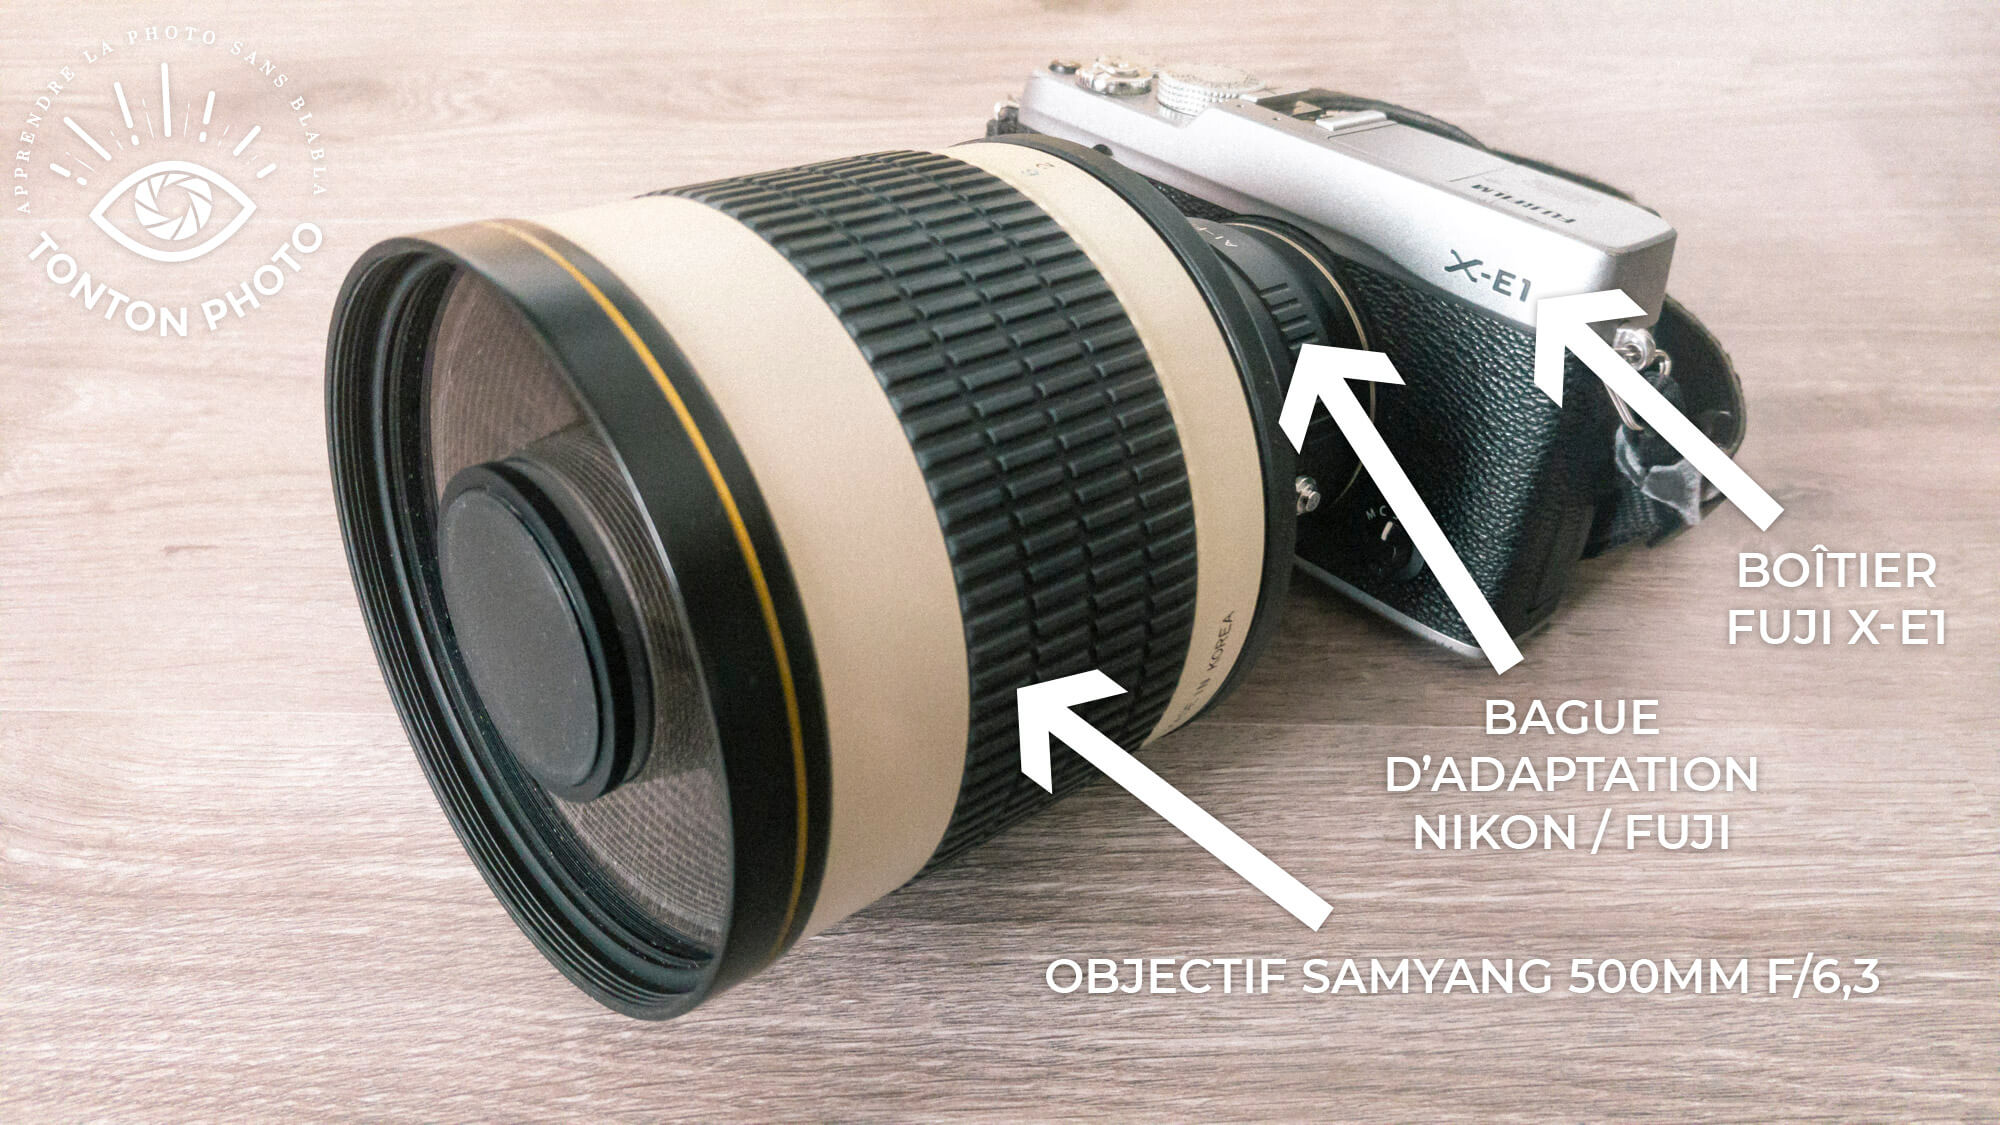 Bague d'adaptation Fuji-Nikon pour utiliser le télé-objectif Samyang 500mm f/6.3 MC IF pour Nikon sur un Fuji X-E1 © Tonton Photo